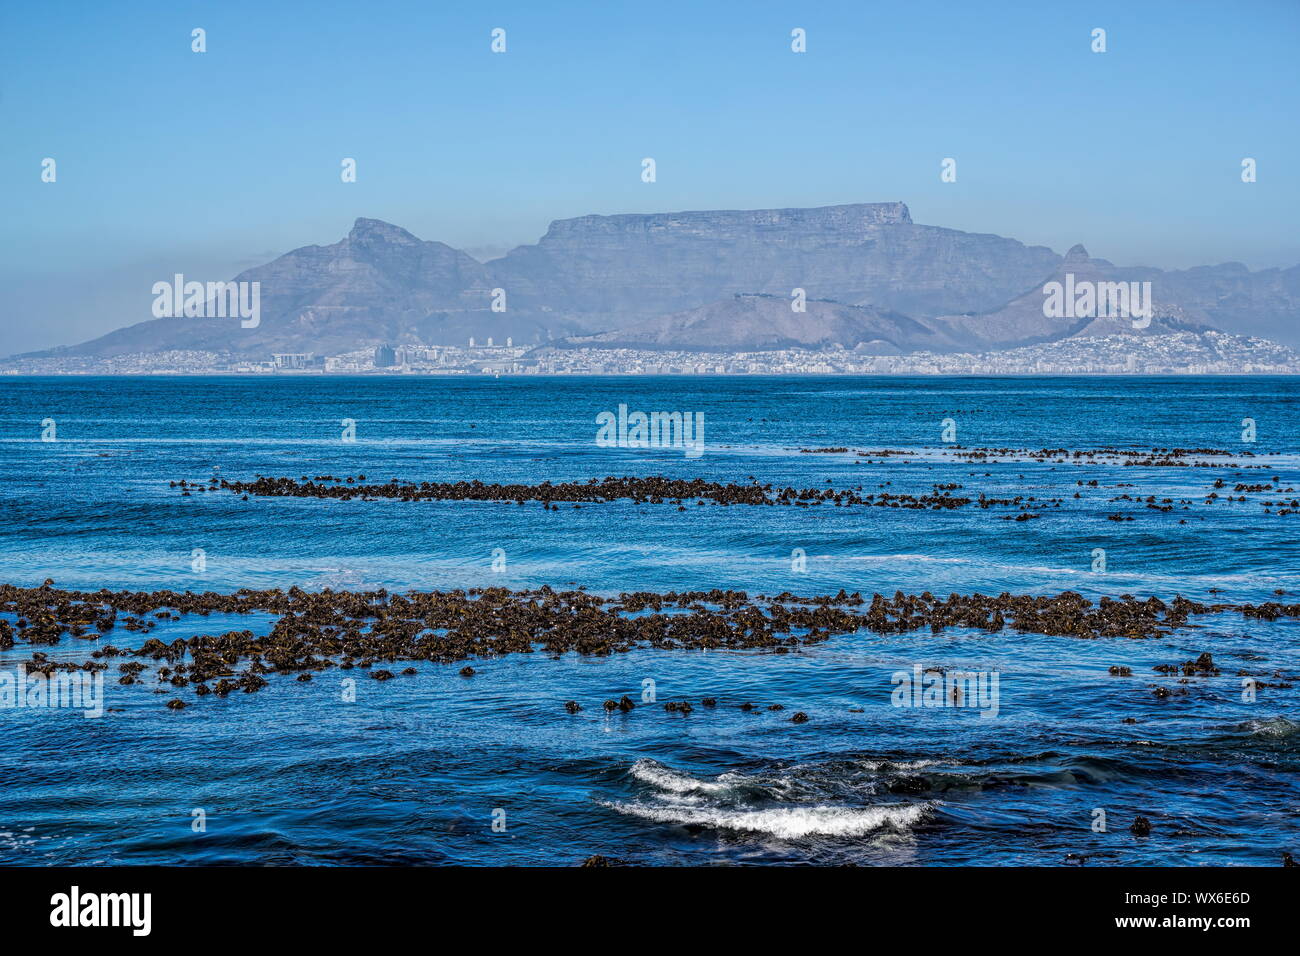 La montagne de la table, vu de l'île Robben Banque D'Images